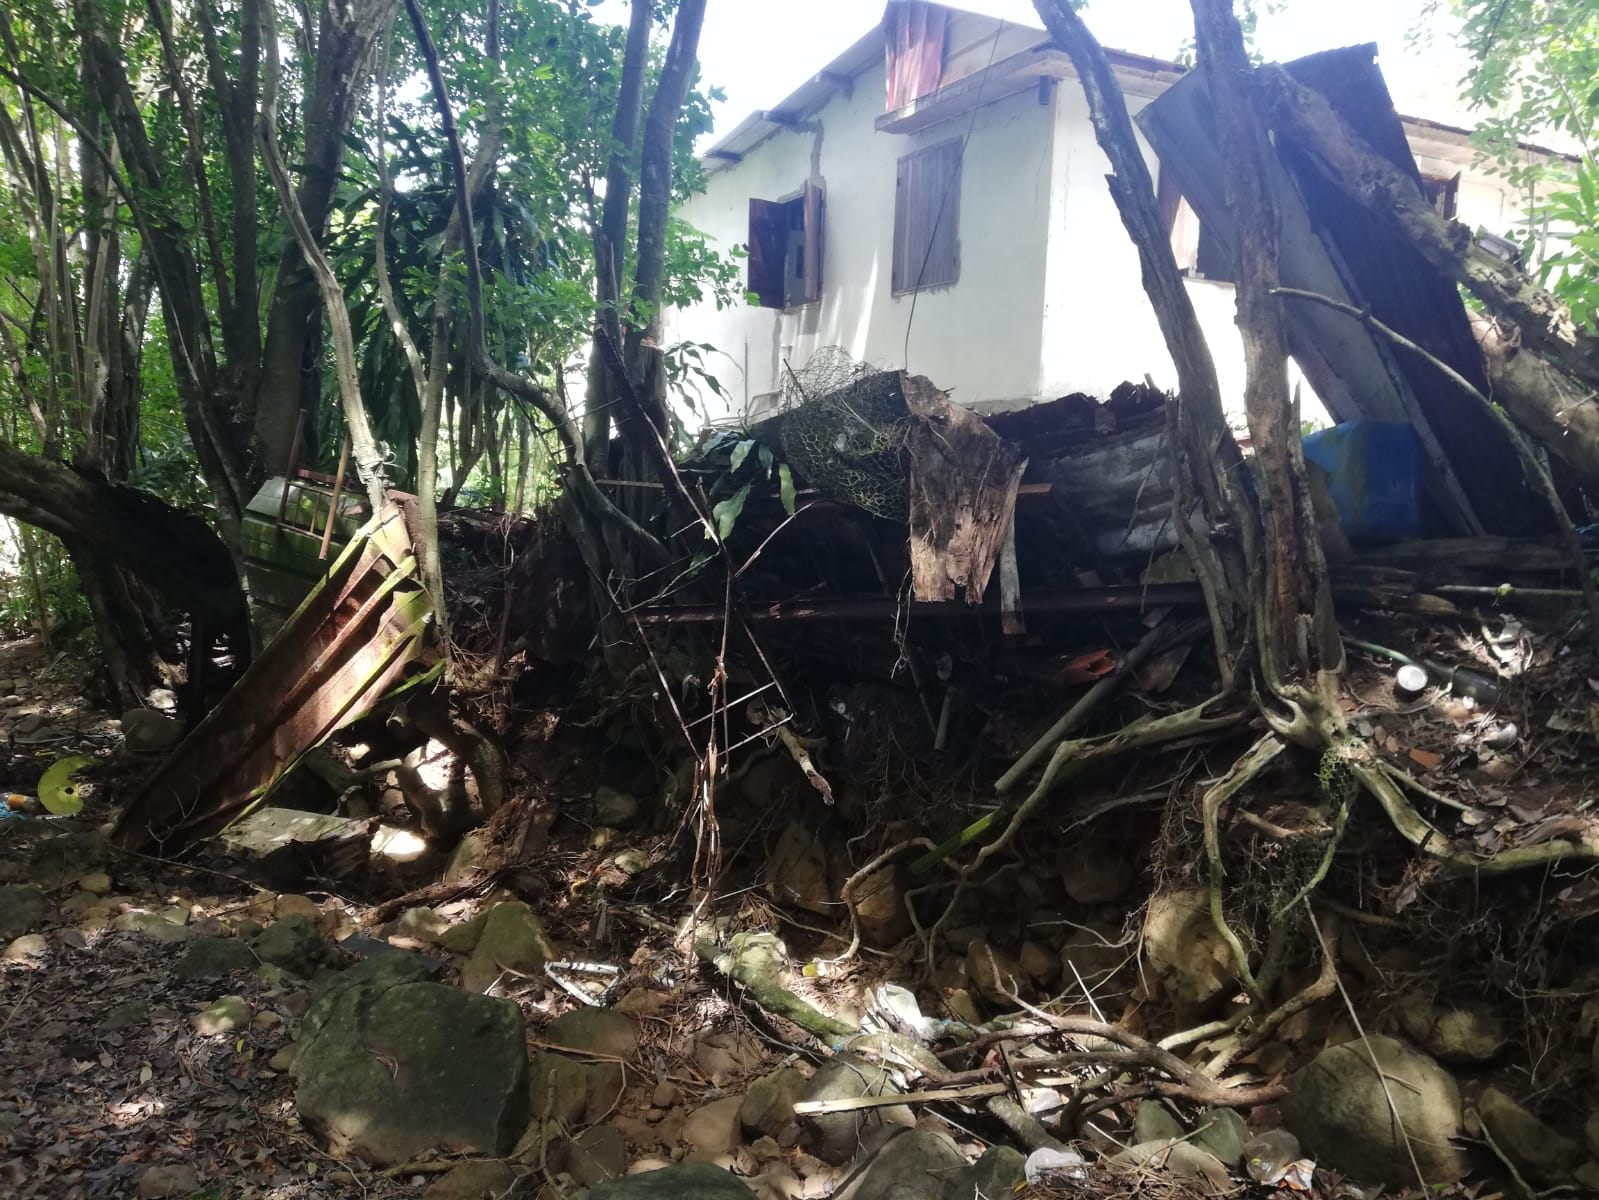     Tartane : une famille confrontée à l'insalubrité face aux déchets jetés dans une ravine voisine

